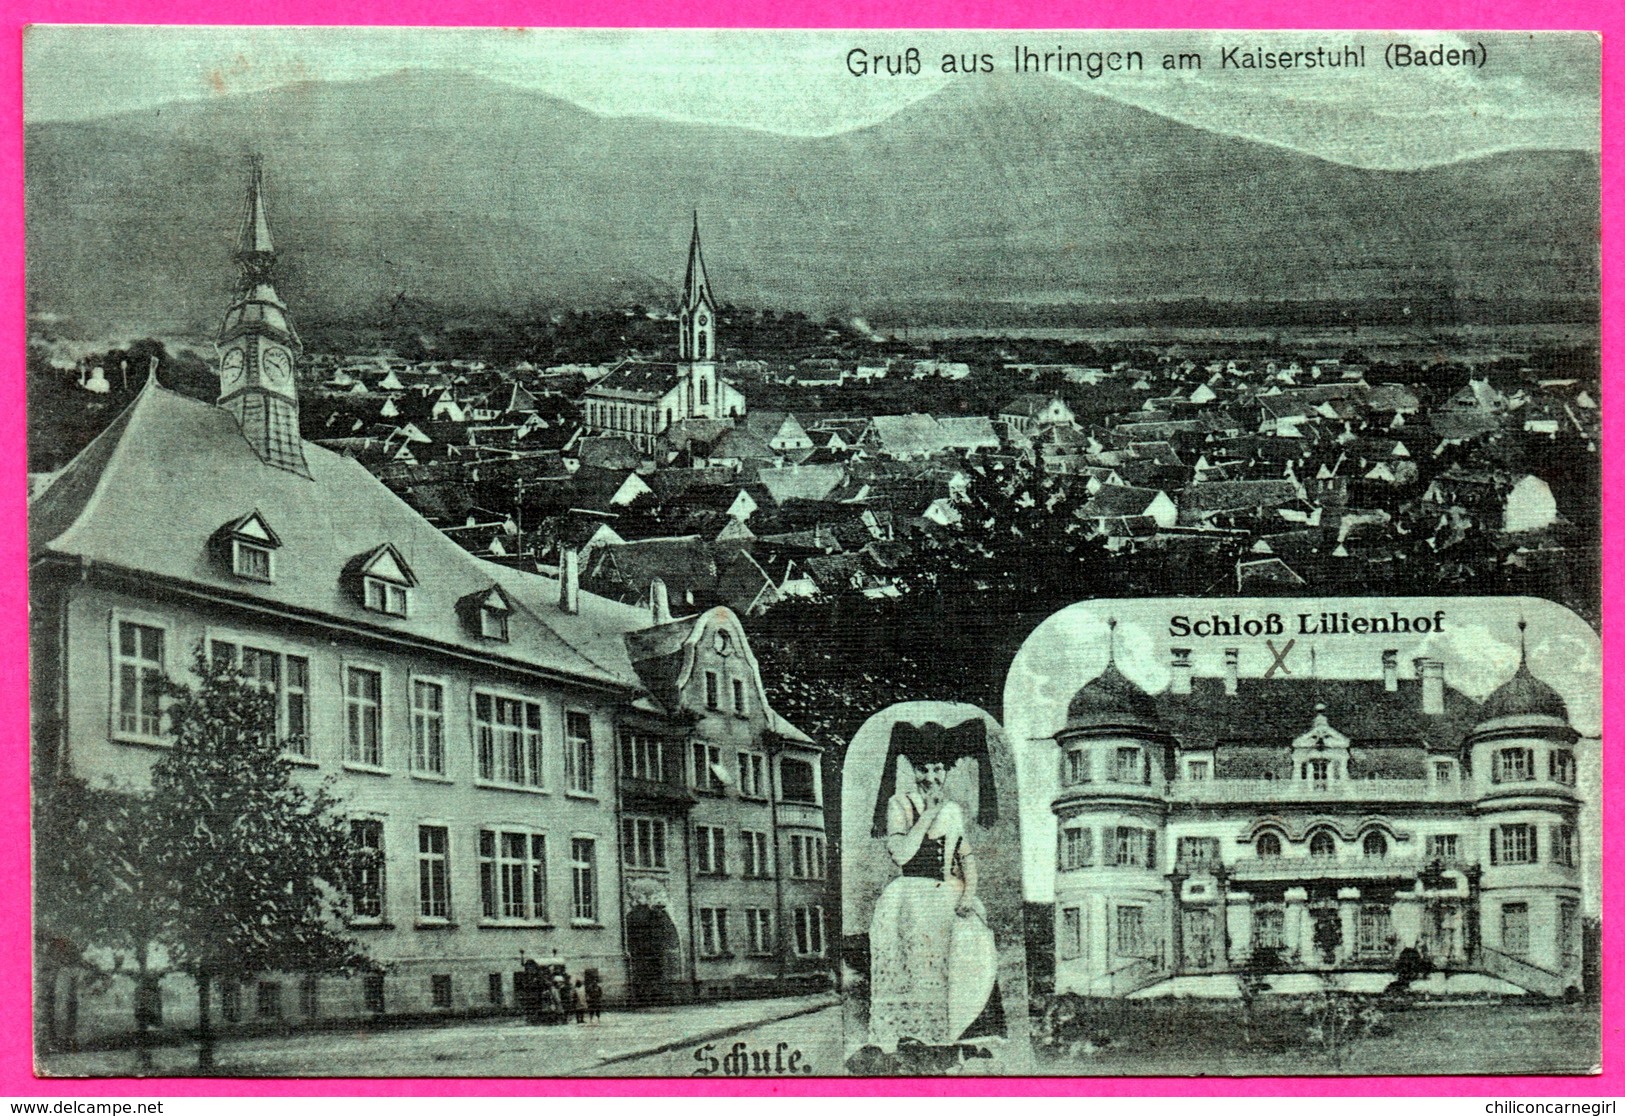 Cp Toilée - Gruss Aus Ihringen Am Kaiserstuhl - Schoss Lilienhof - Oblit. Colmar P.K. - 1916 - Verlag BURGHAUS KISSLER - Ihringen